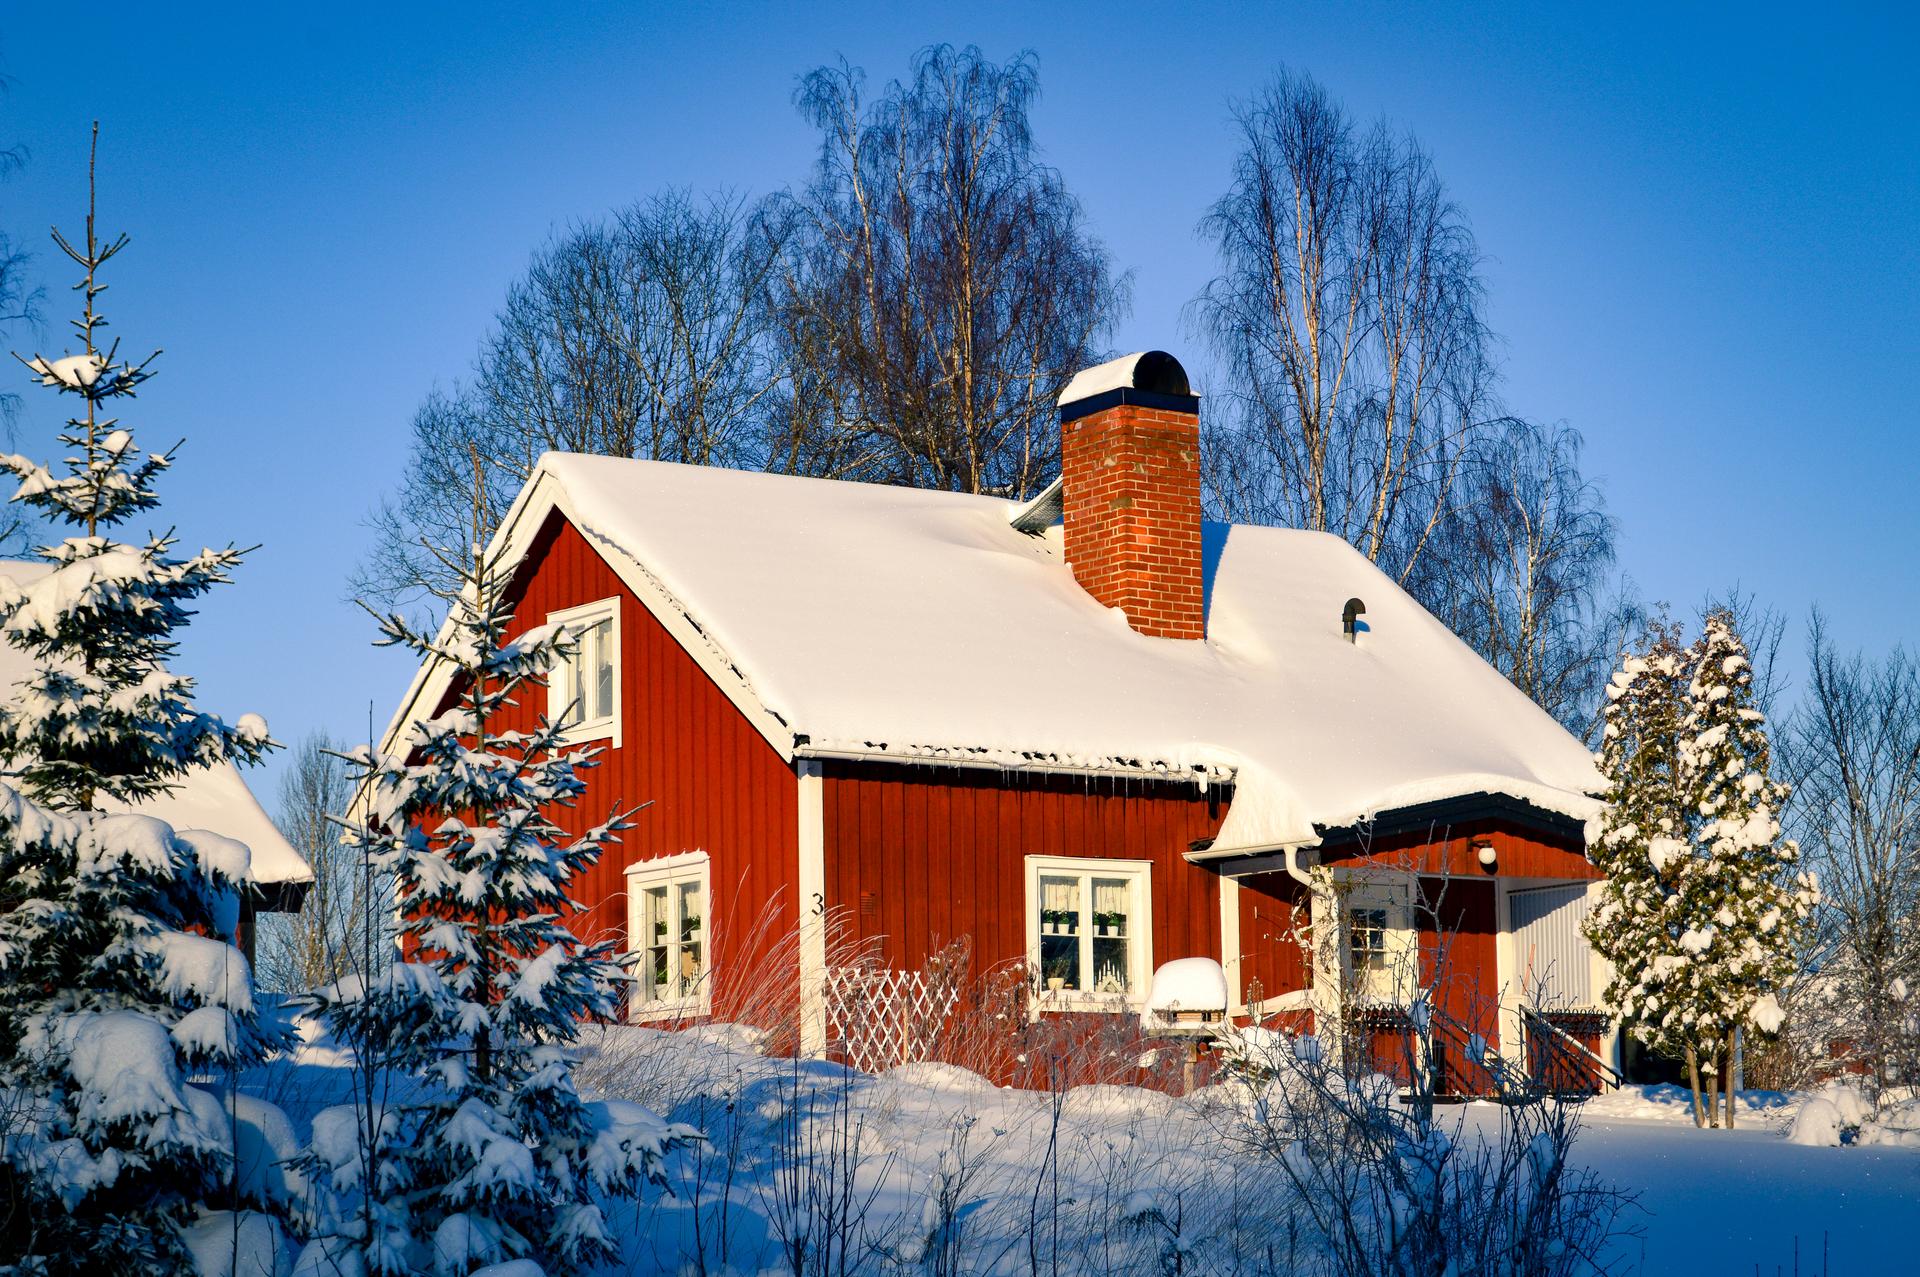 La cabaña en la naturaleza durante el invierno, una cabaña tradicional sueca.